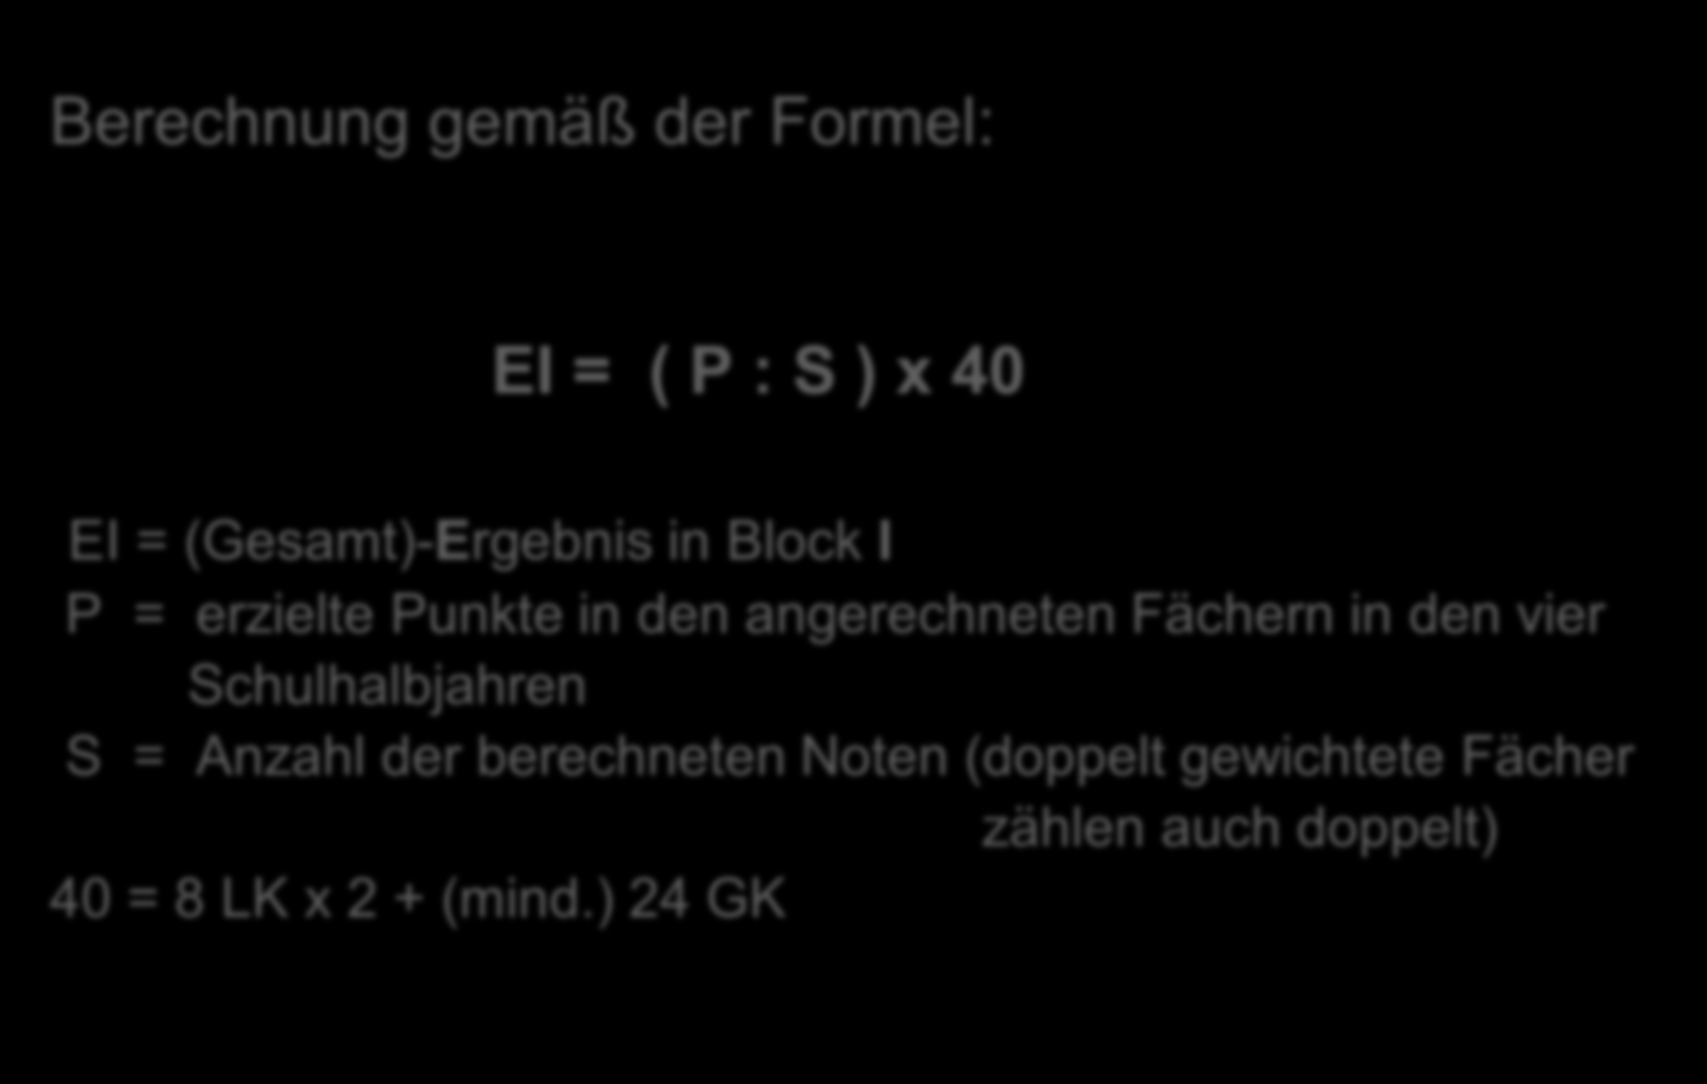 4. Berechnung der Gesamtqualifikation Berechnung gemäß der Formel: EI = ( P : S ) x 40 EI = (Gesamt)-Ergebnis in Block I P = erzielte Punkte in den